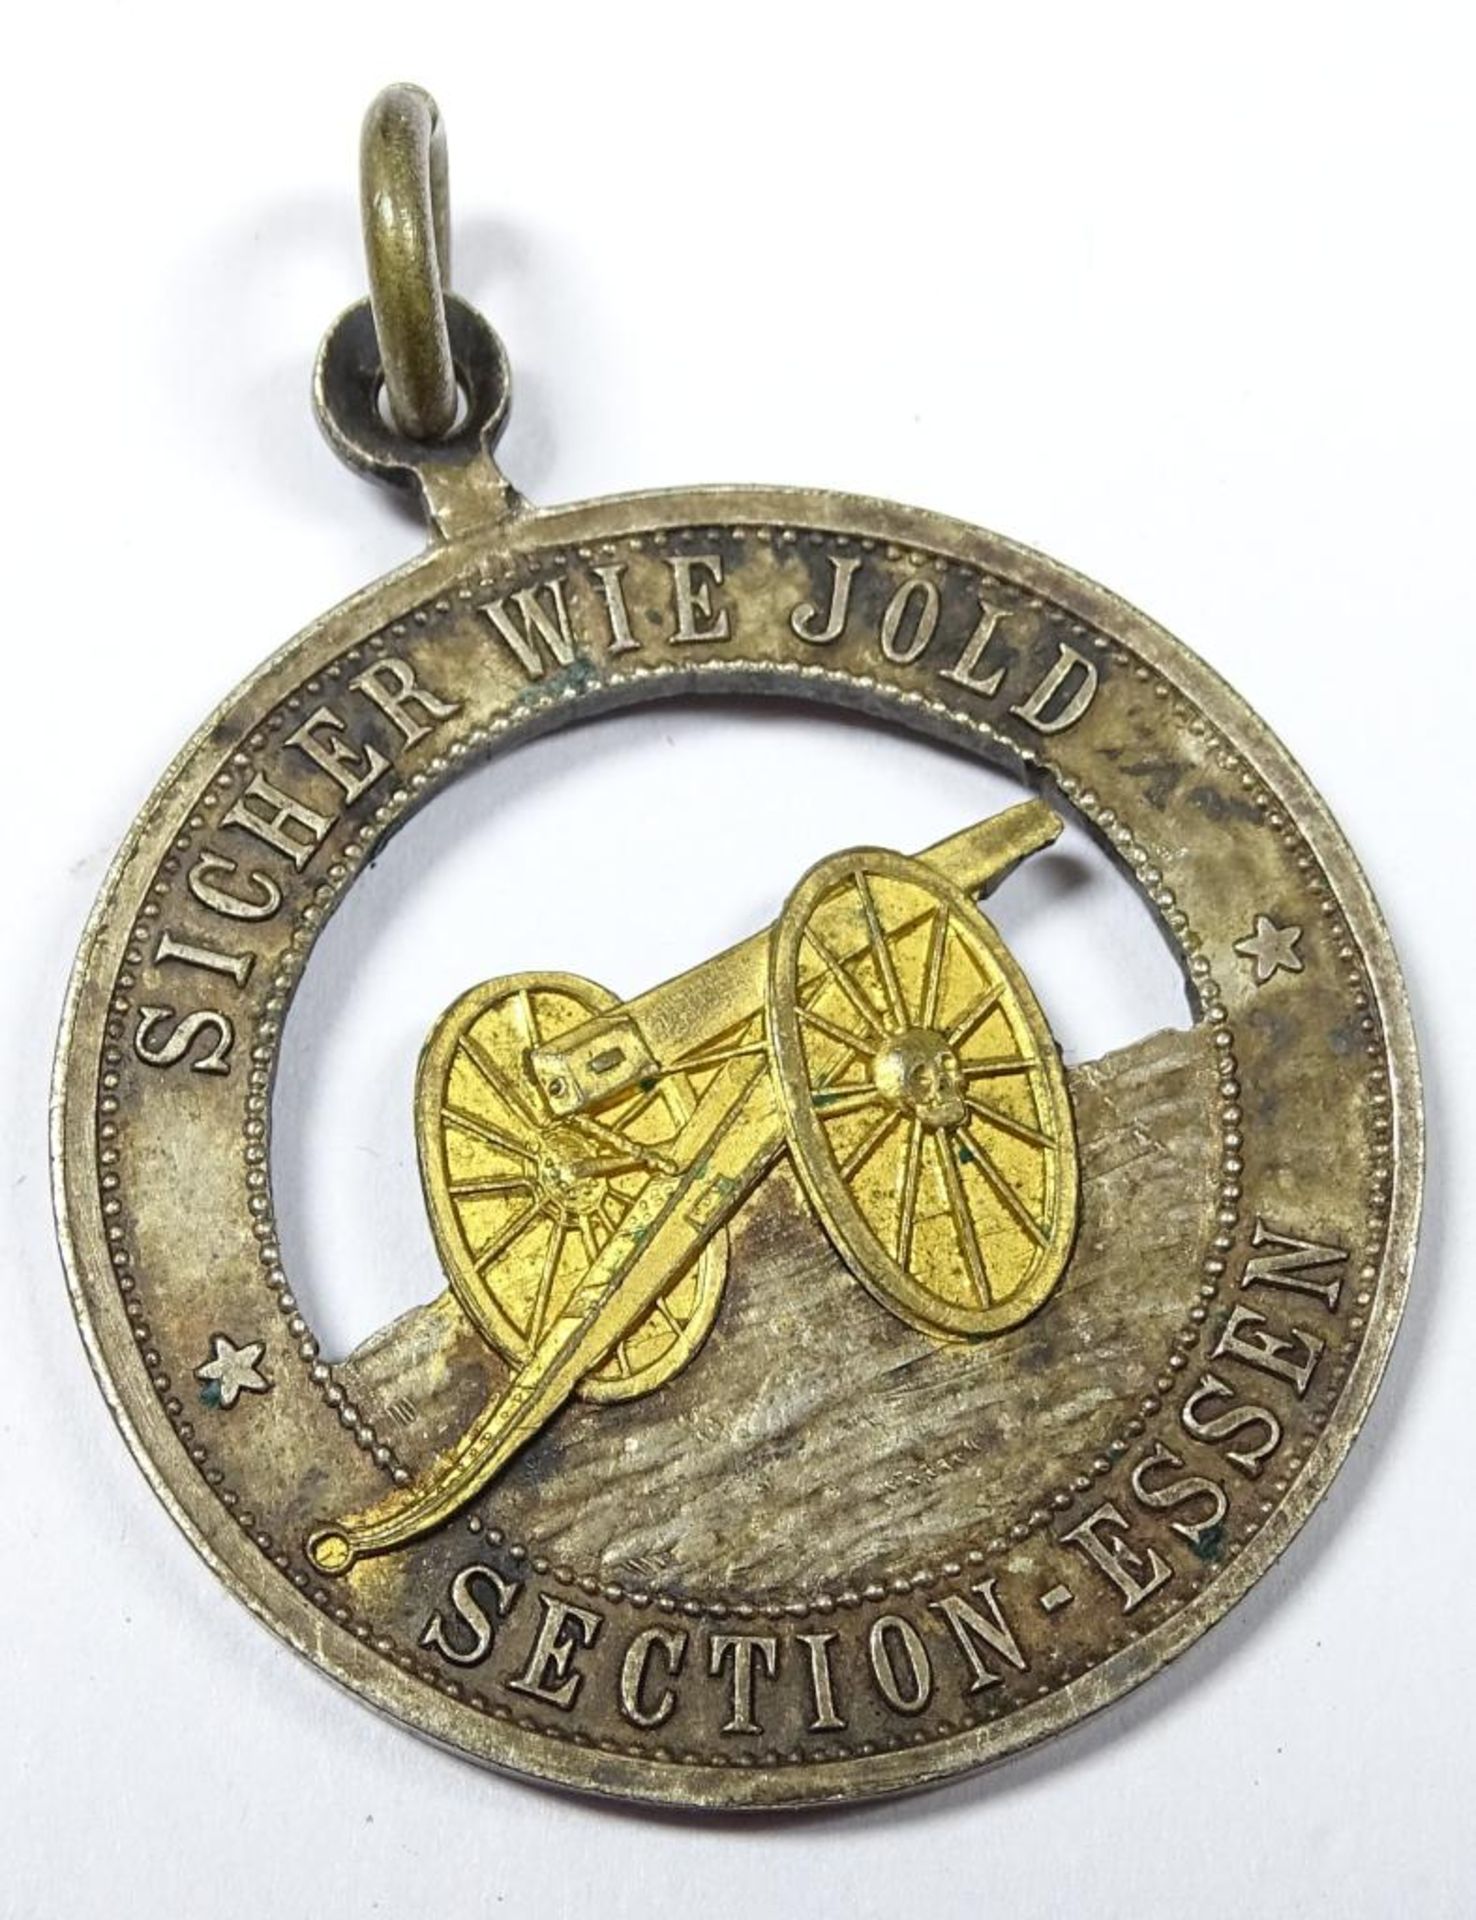 Kaiserliches Artillerie Abzeichen,Medaille "Sektion Essen",Silber vergoldet,nicht gestempelt